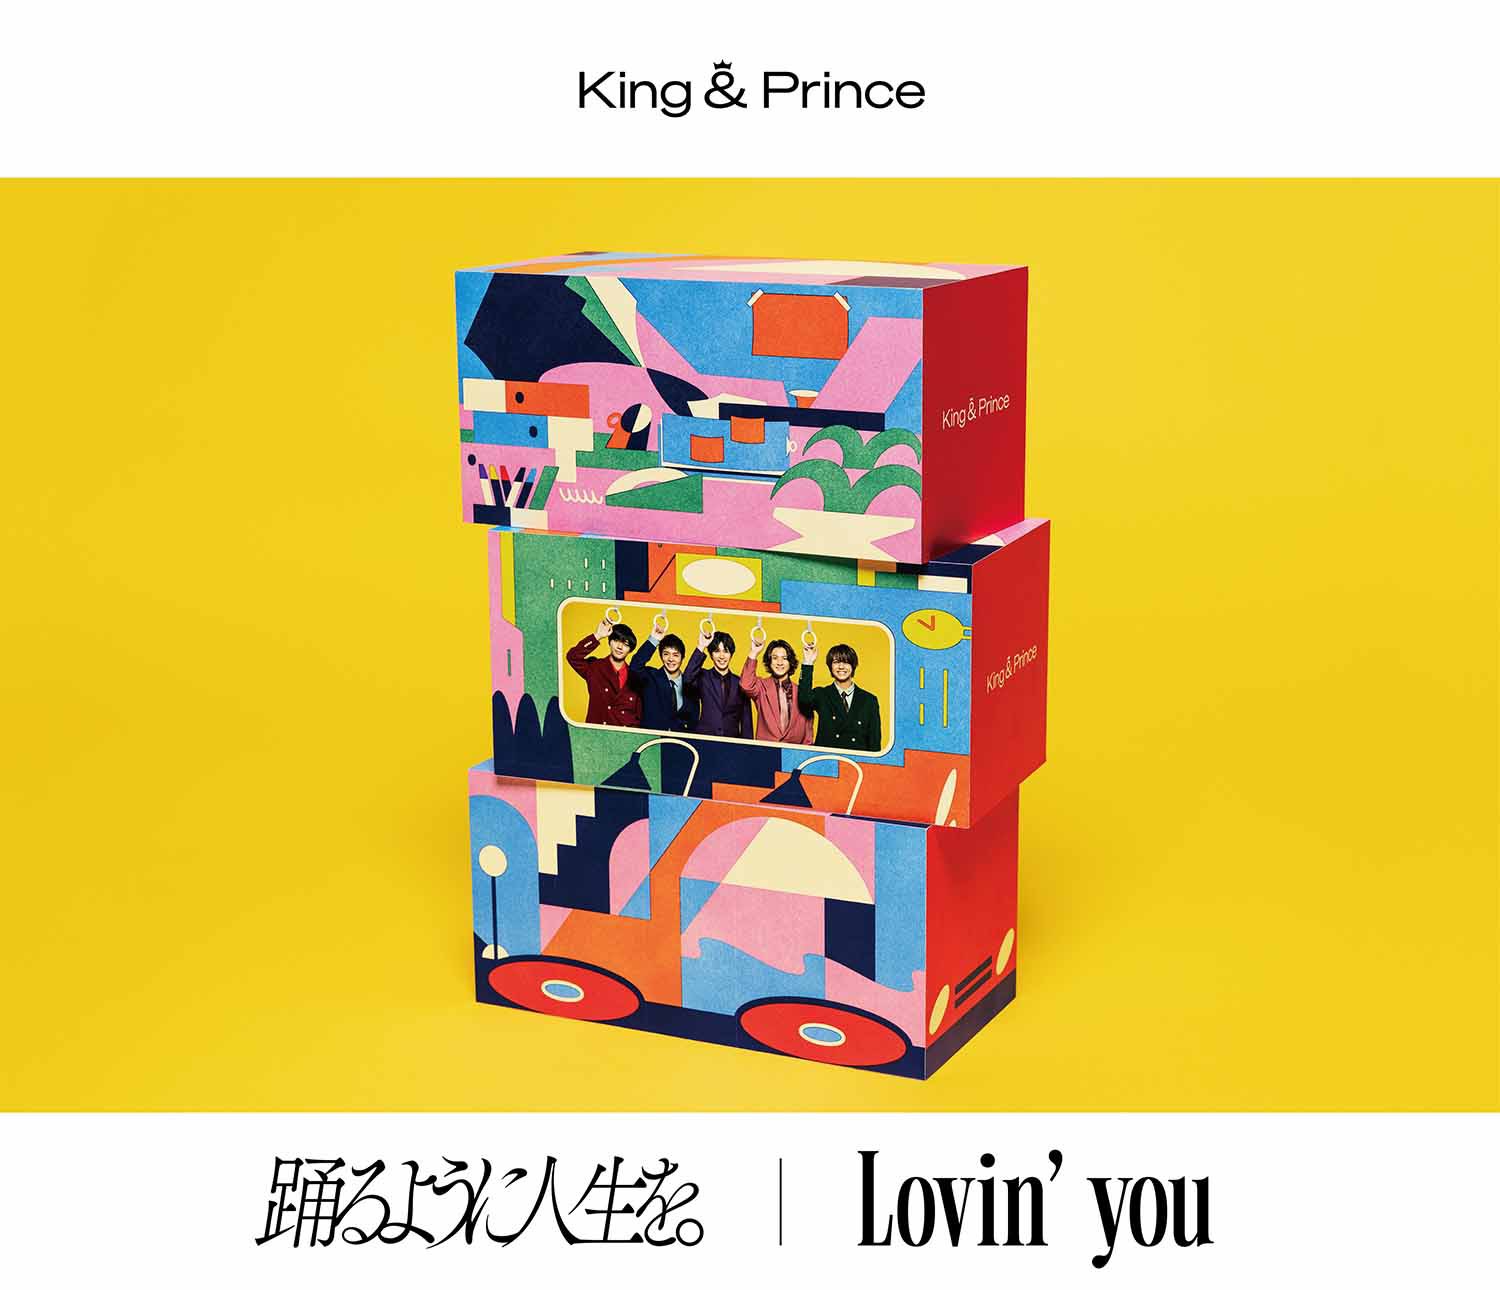 Виртуальное свидание с King & Prince в клипе «Lovin' you»